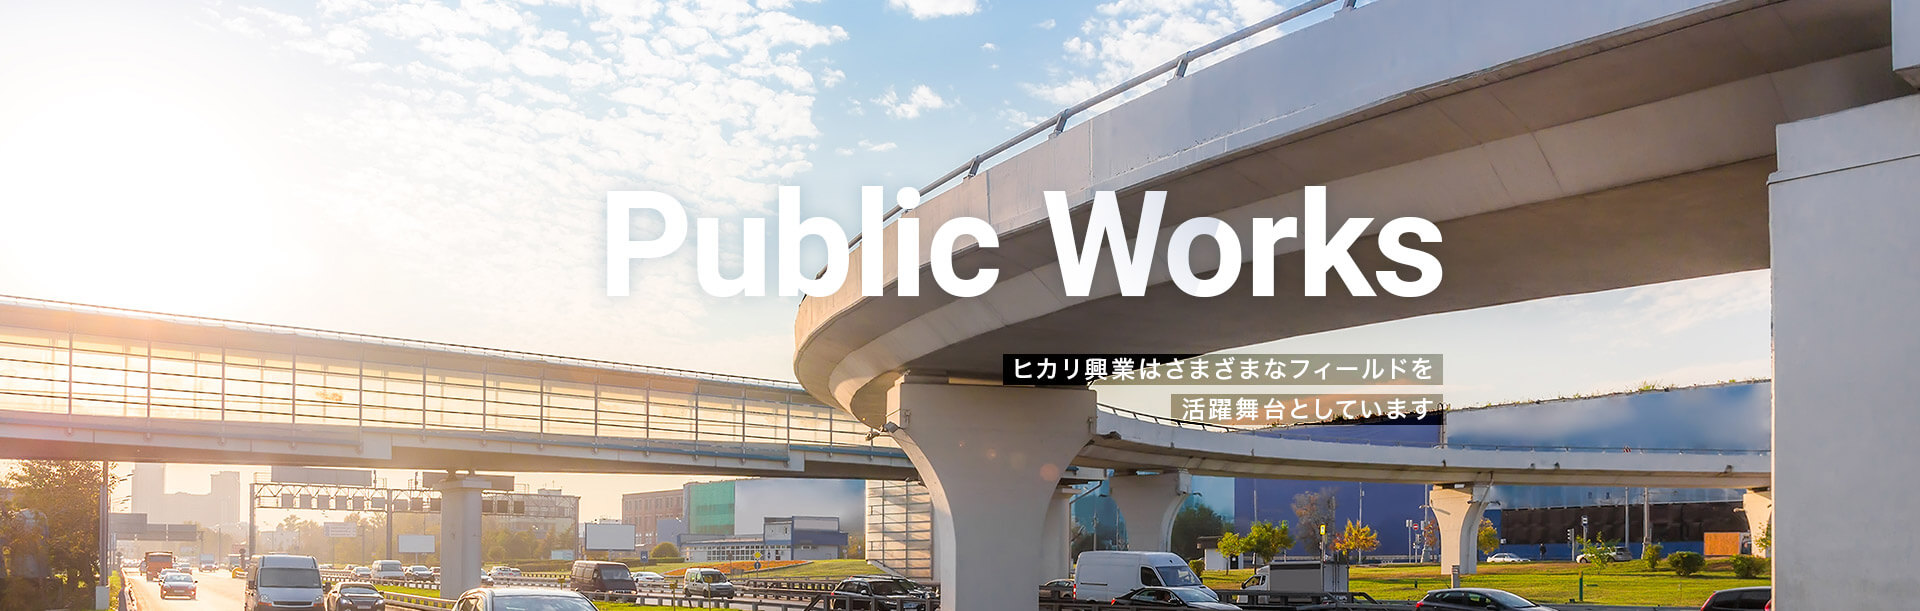 Publick Works